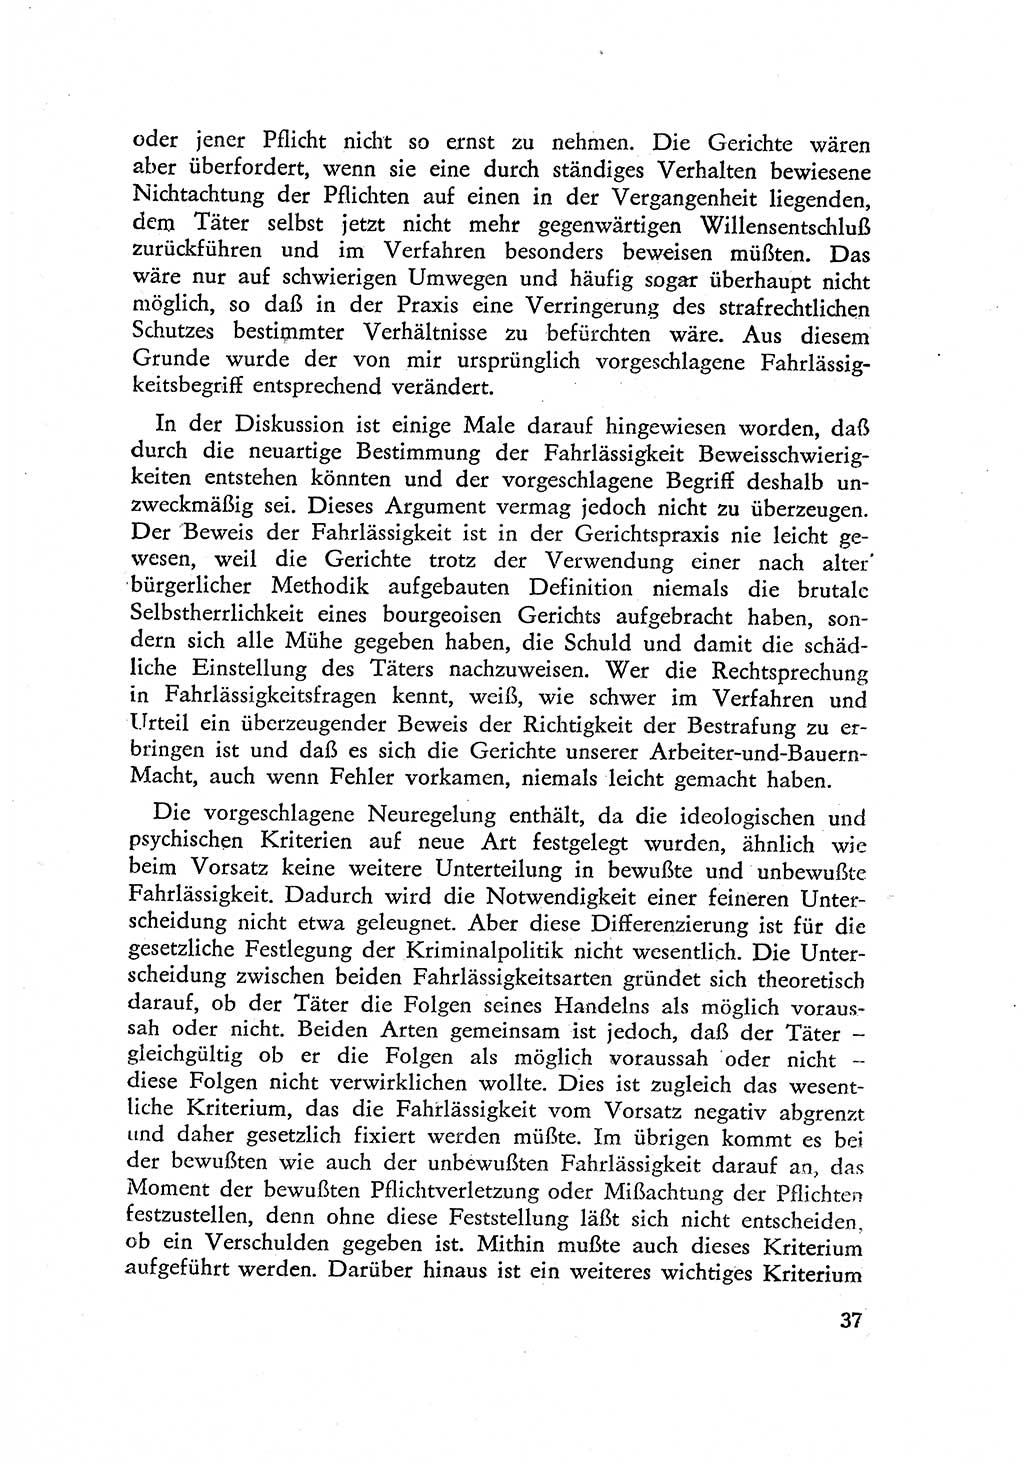 Beiträge zum Strafrecht [Deutsche Demokratische Republik (DDR)] 1959, Seite 37 (Beitr. Strafr. DDR 1959, S. 37)